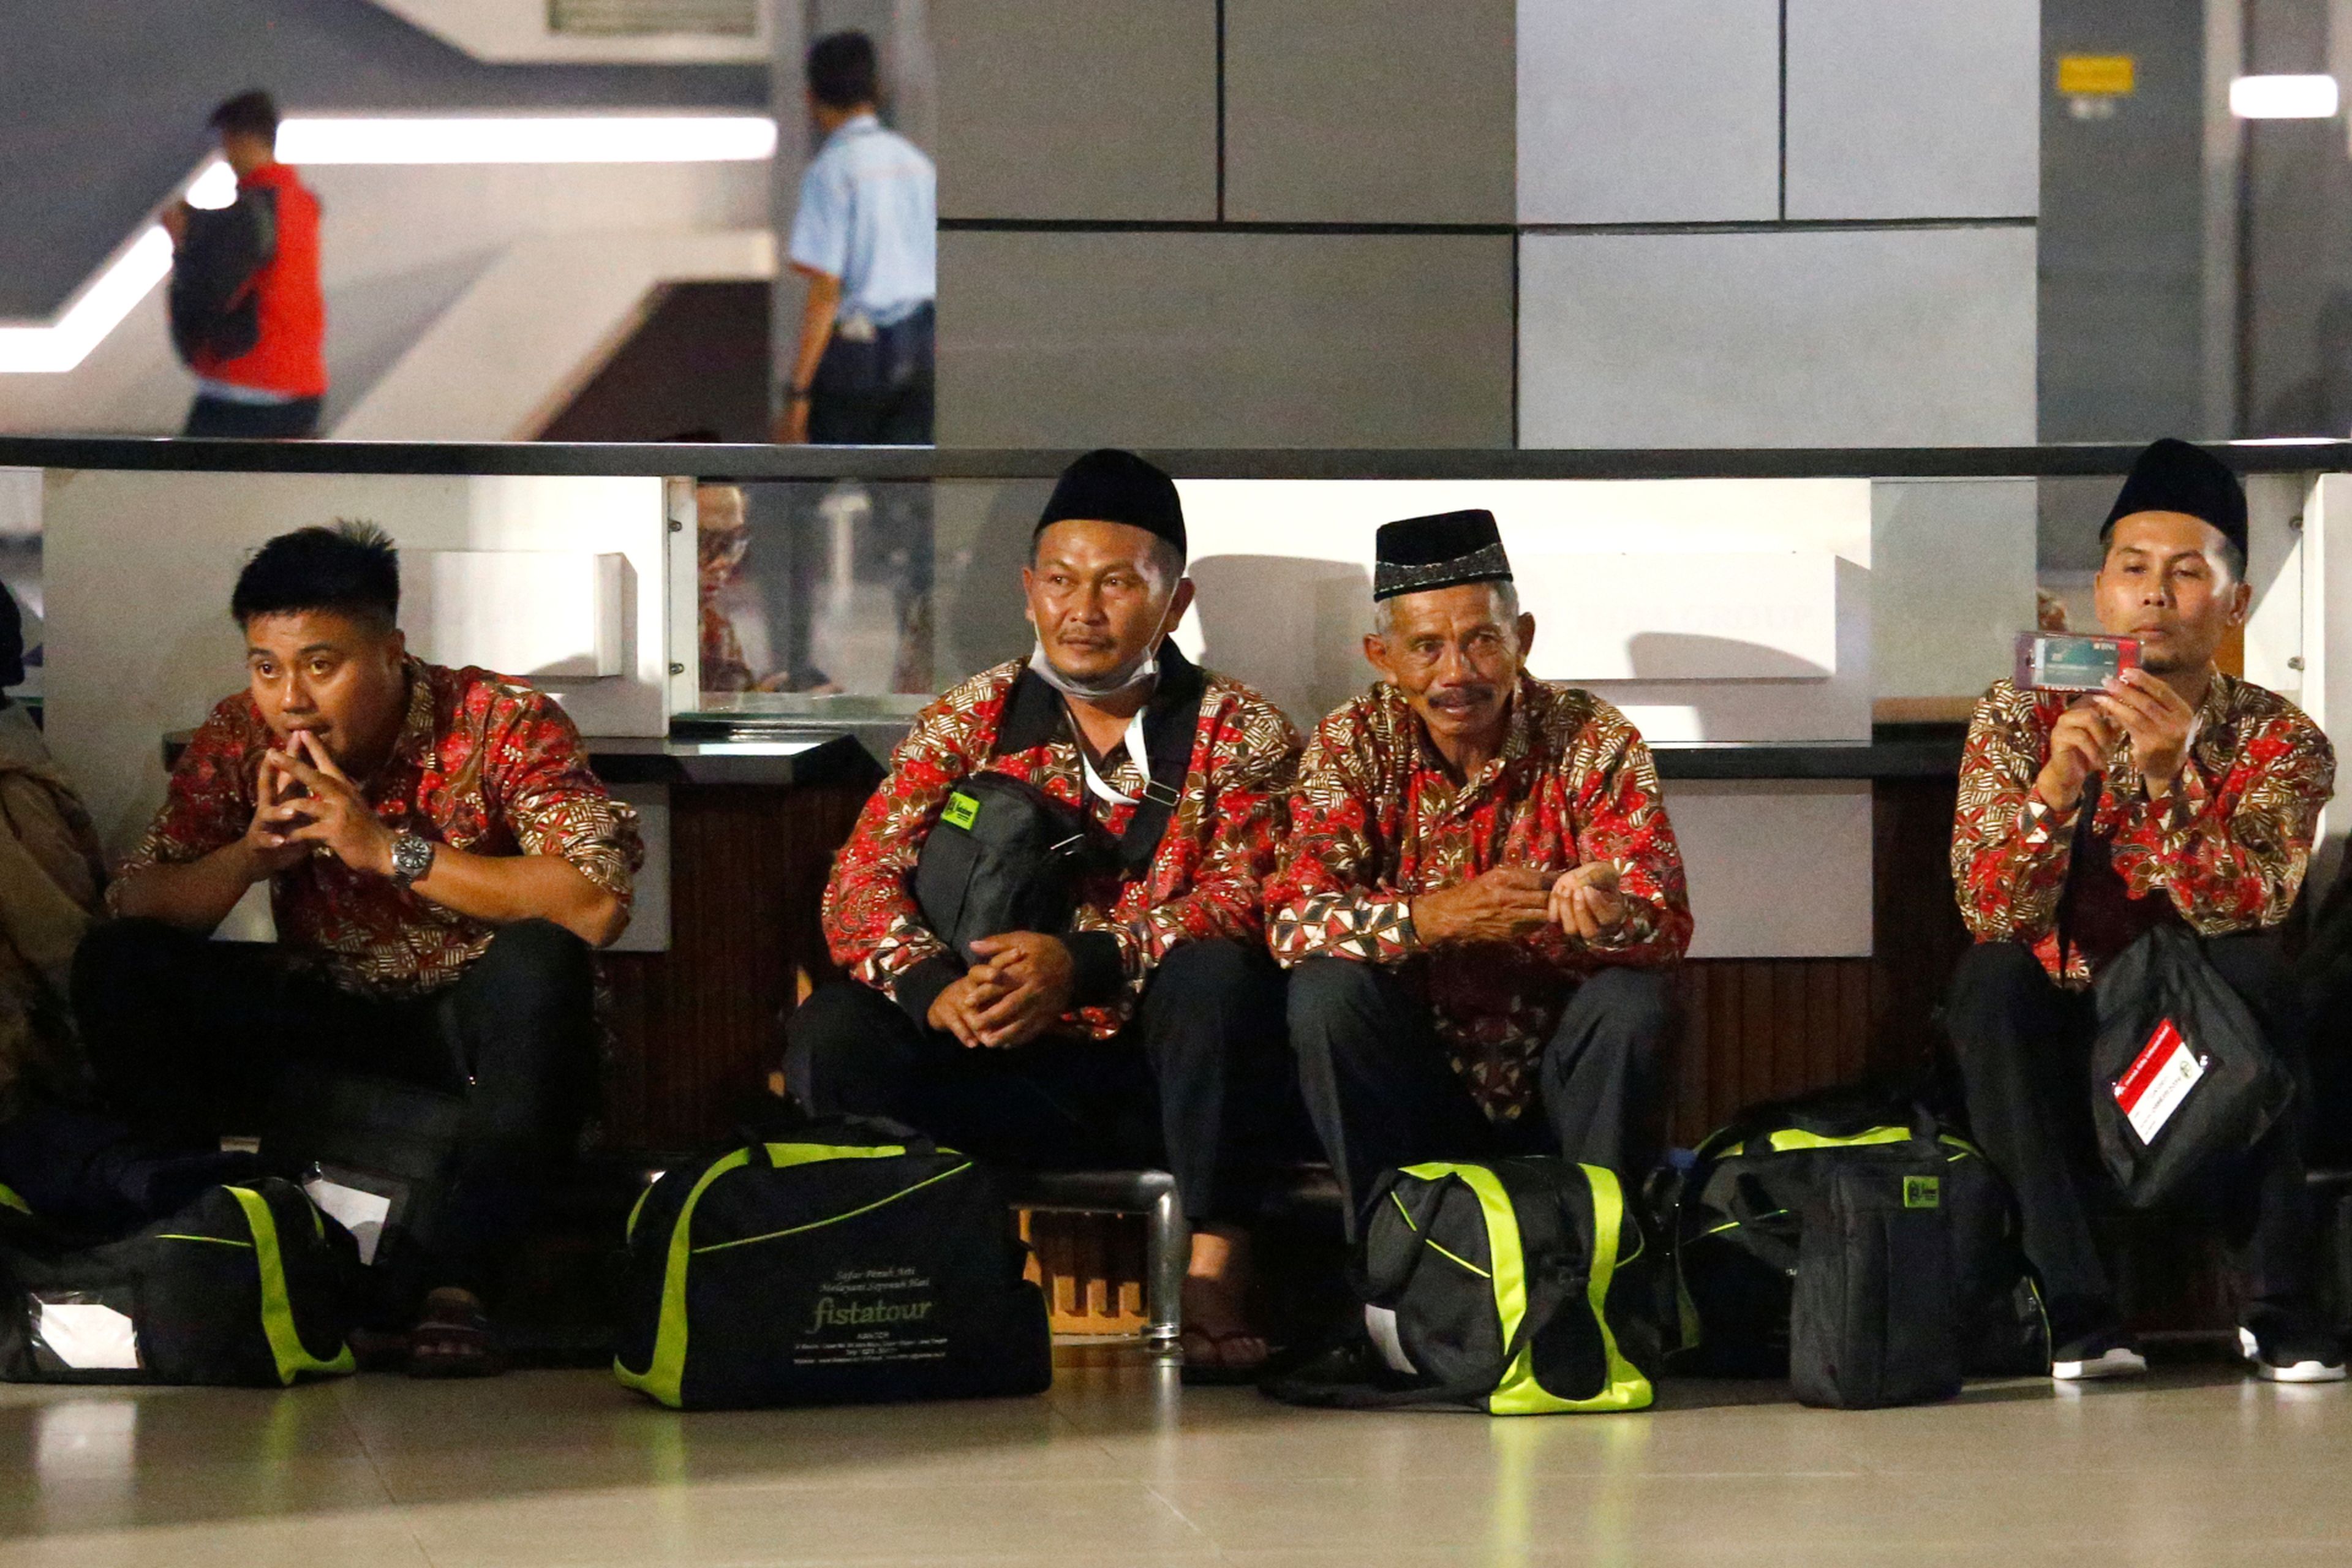 Un grupo de peregrinos esperan en el aeropuerto de Jakarta tras la cancelación de visados para viajar a La Meca